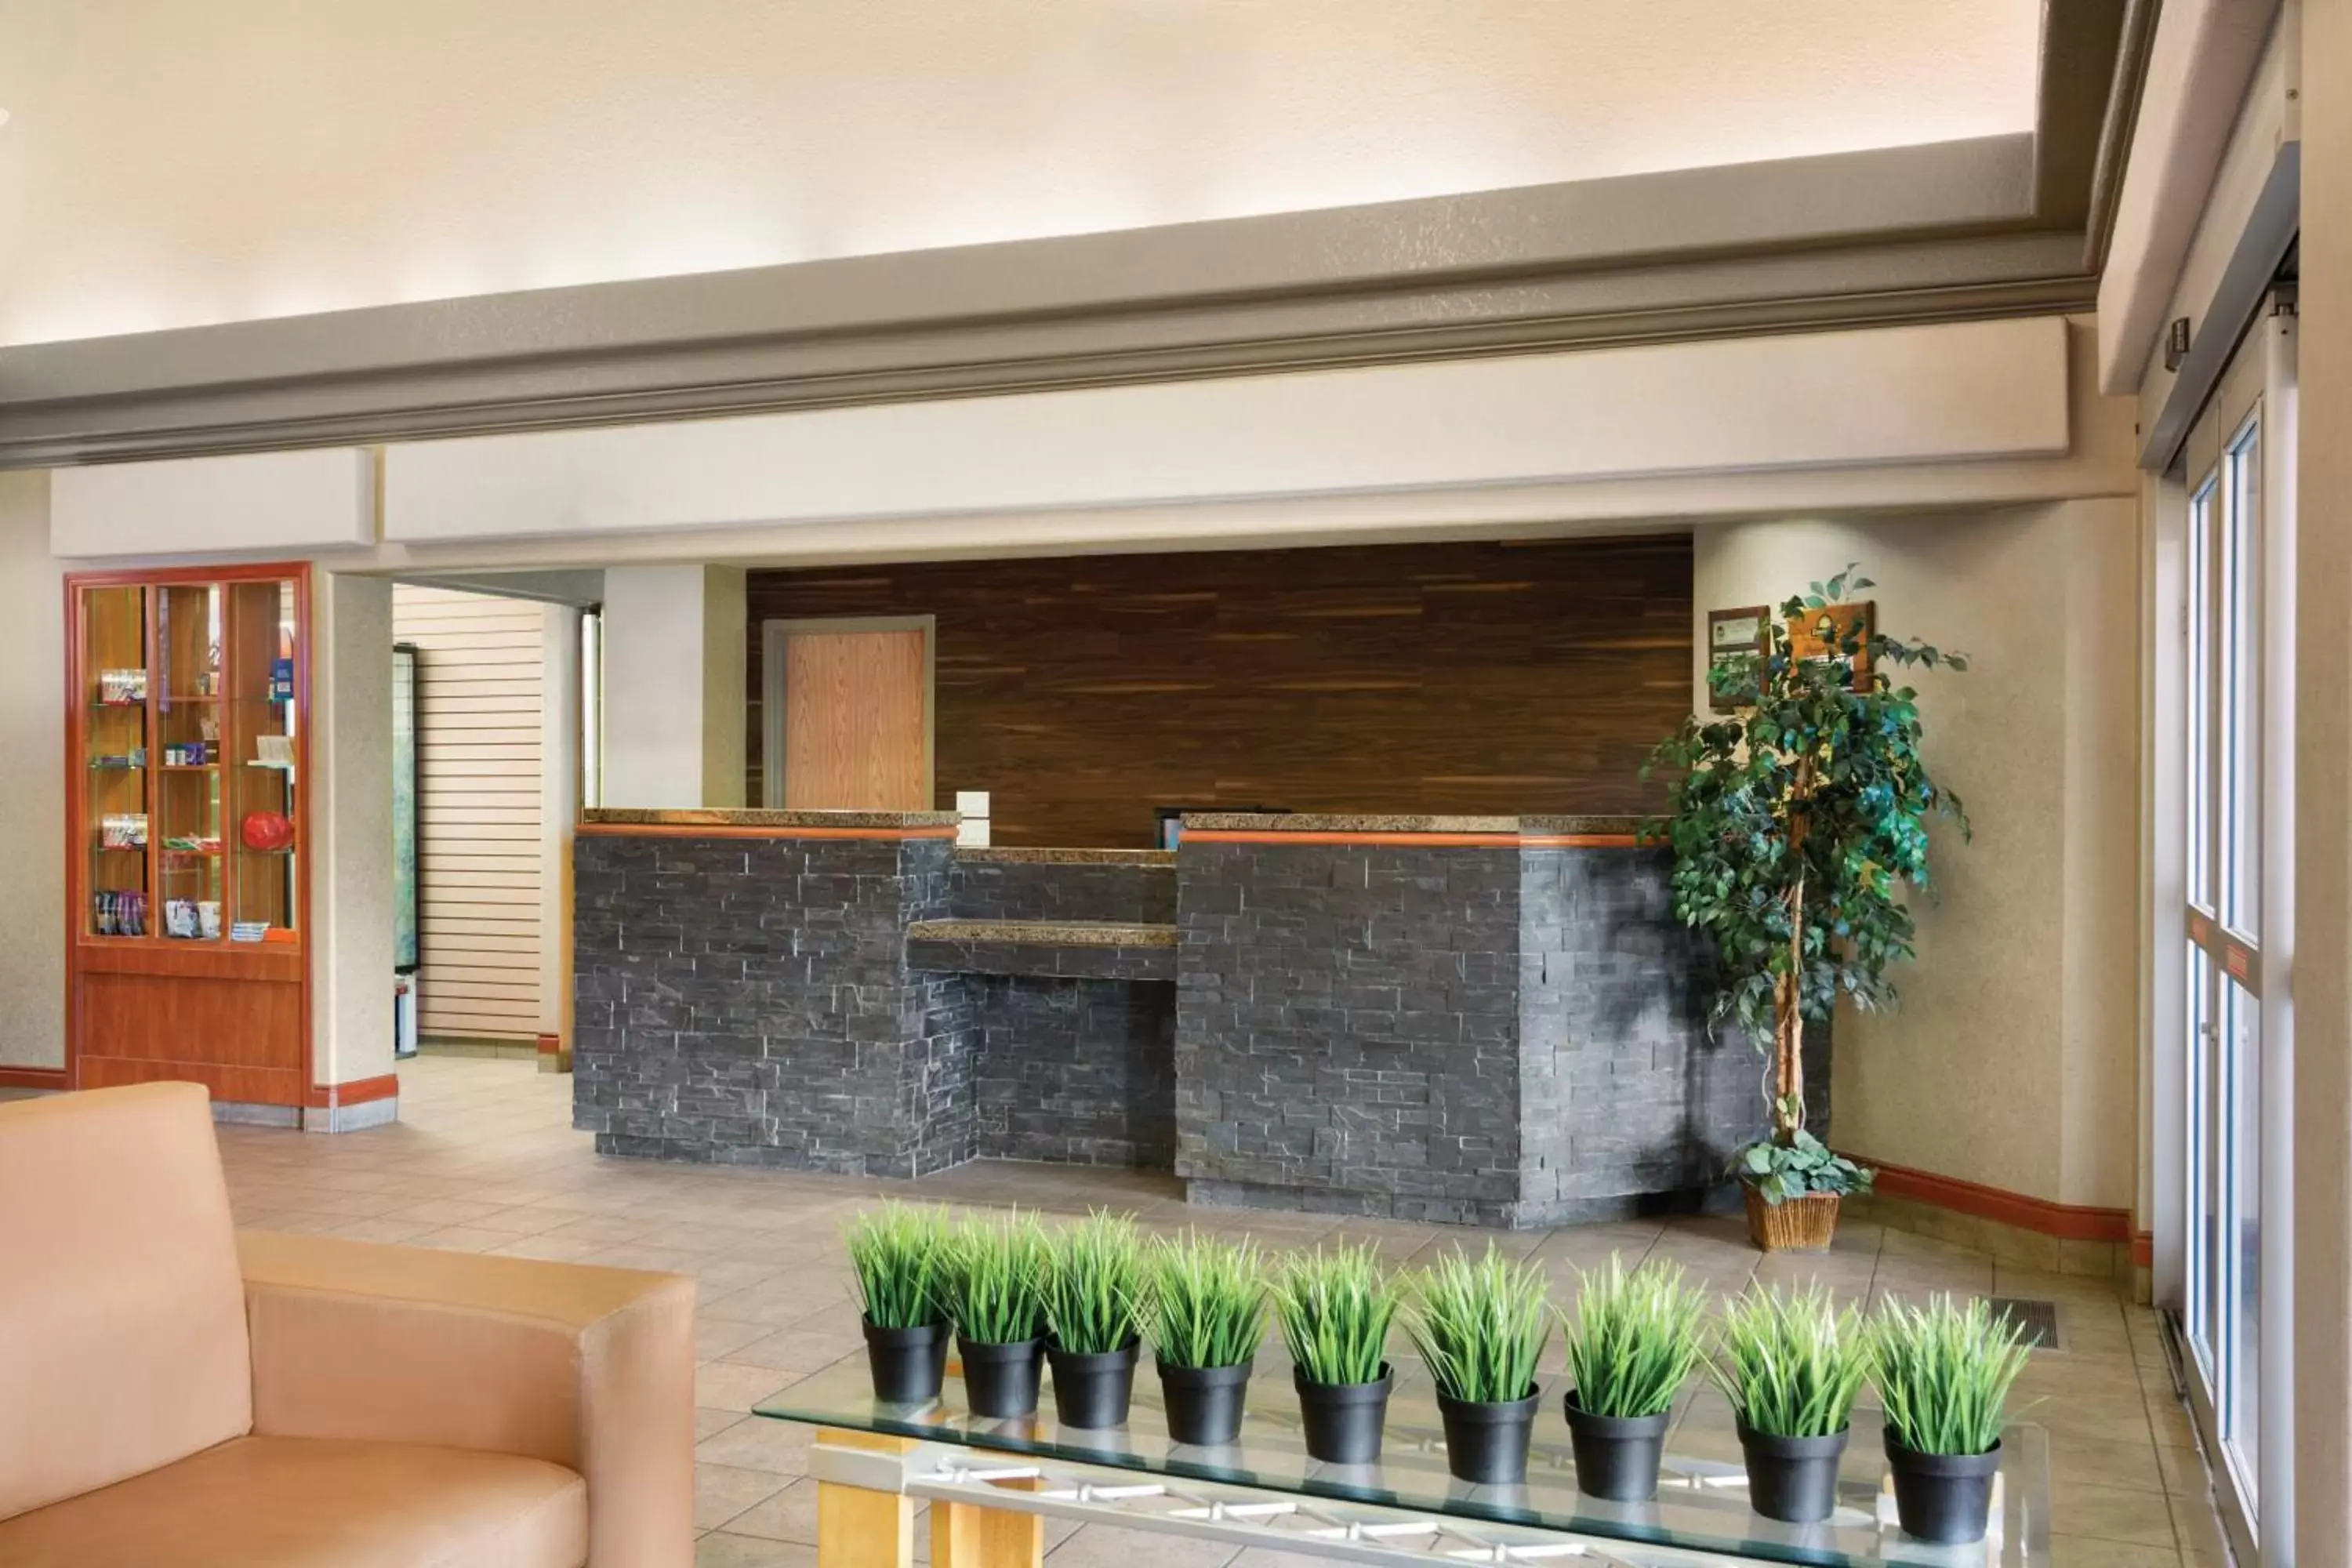 Lobby or reception, Lobby/Reception in Days Inn by Wyndham Calgary Airport